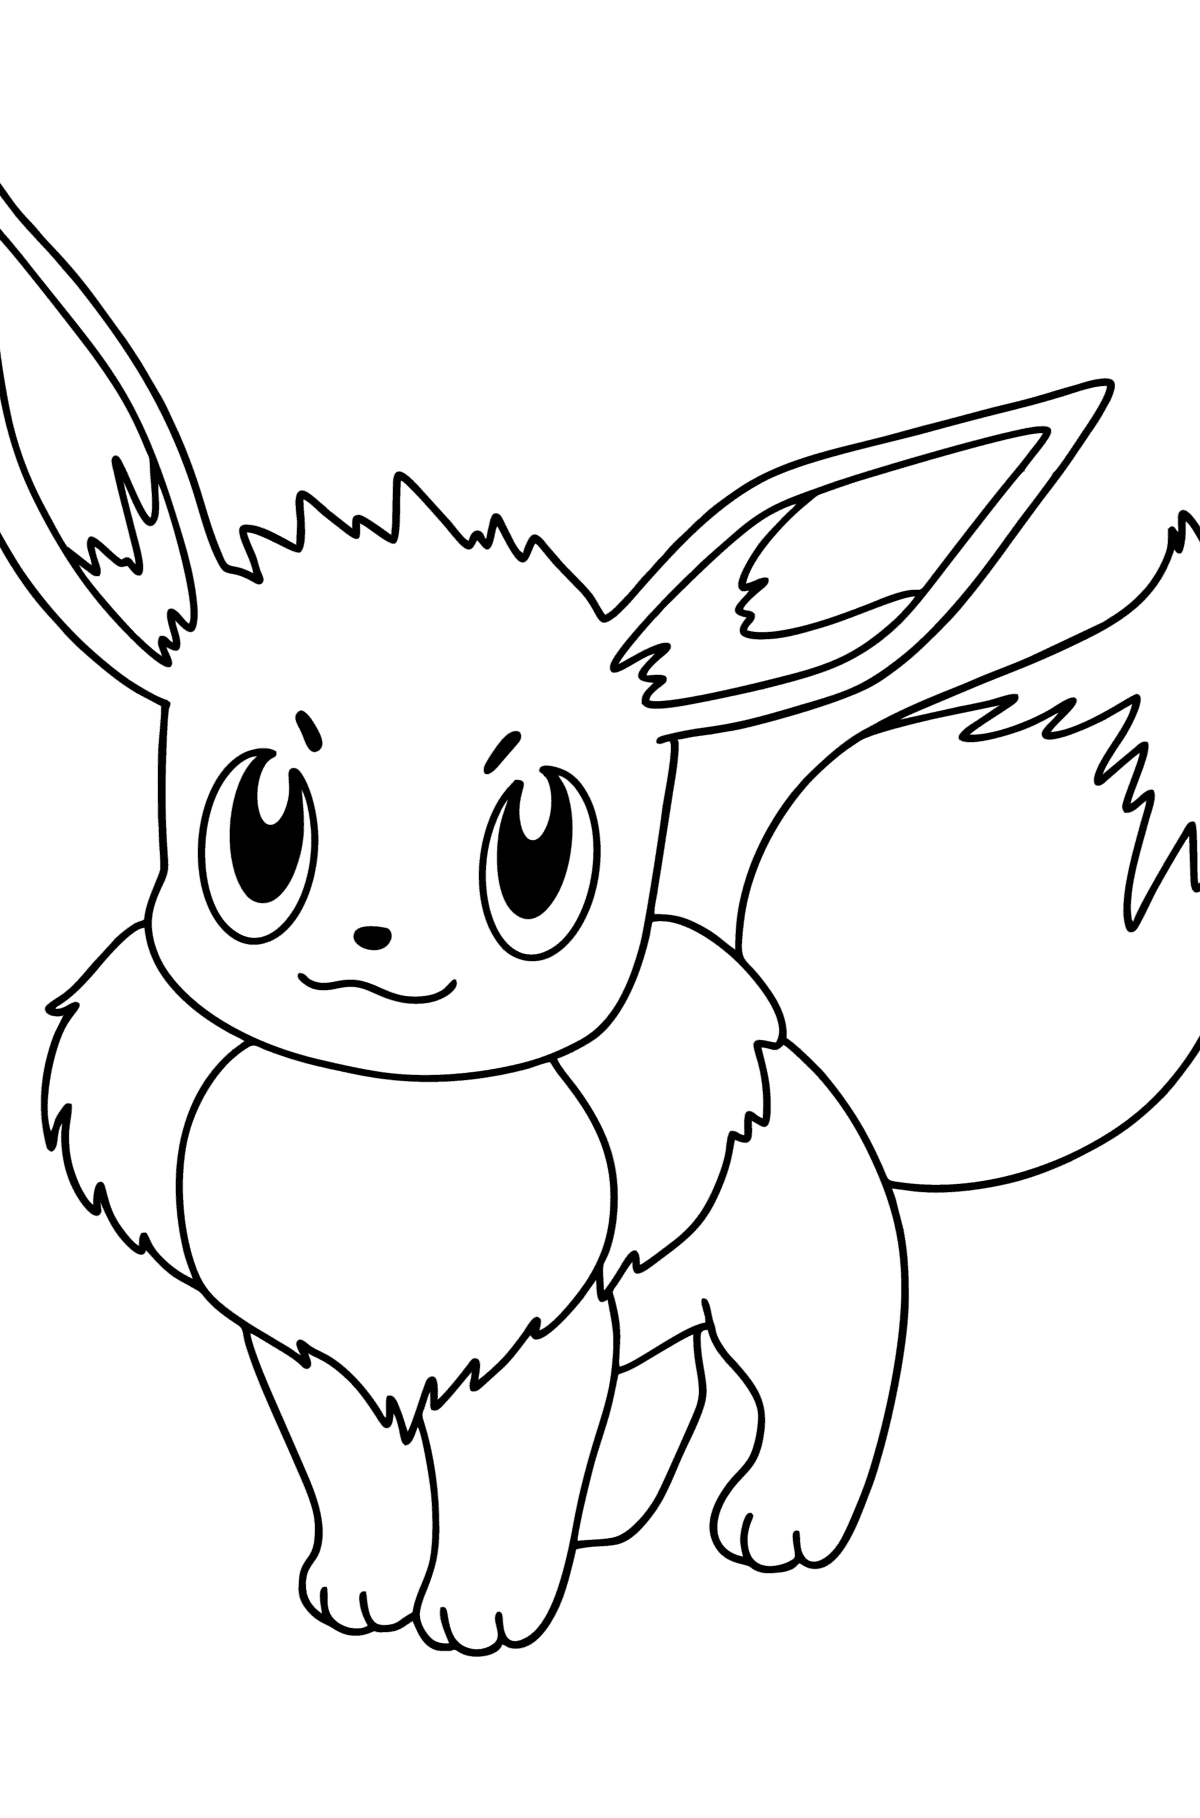 Раскраска Pokemon Go Eevee - Картинки для Детей